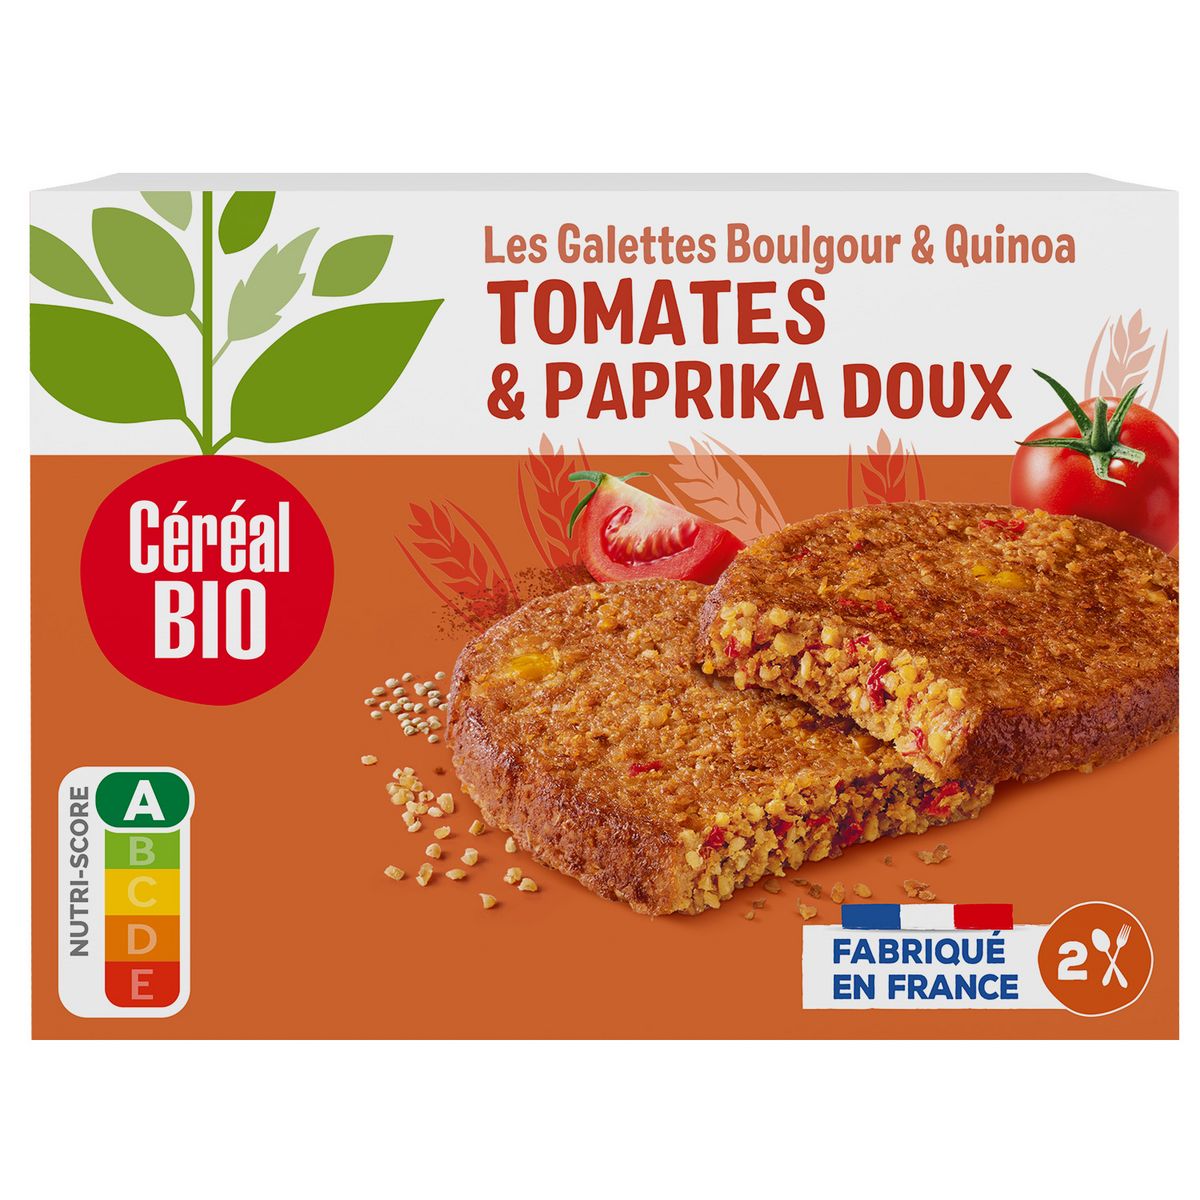 CÉRÉAL BIO Galettes boulgour et quinoa à la tomate 2 galettes 2x100g